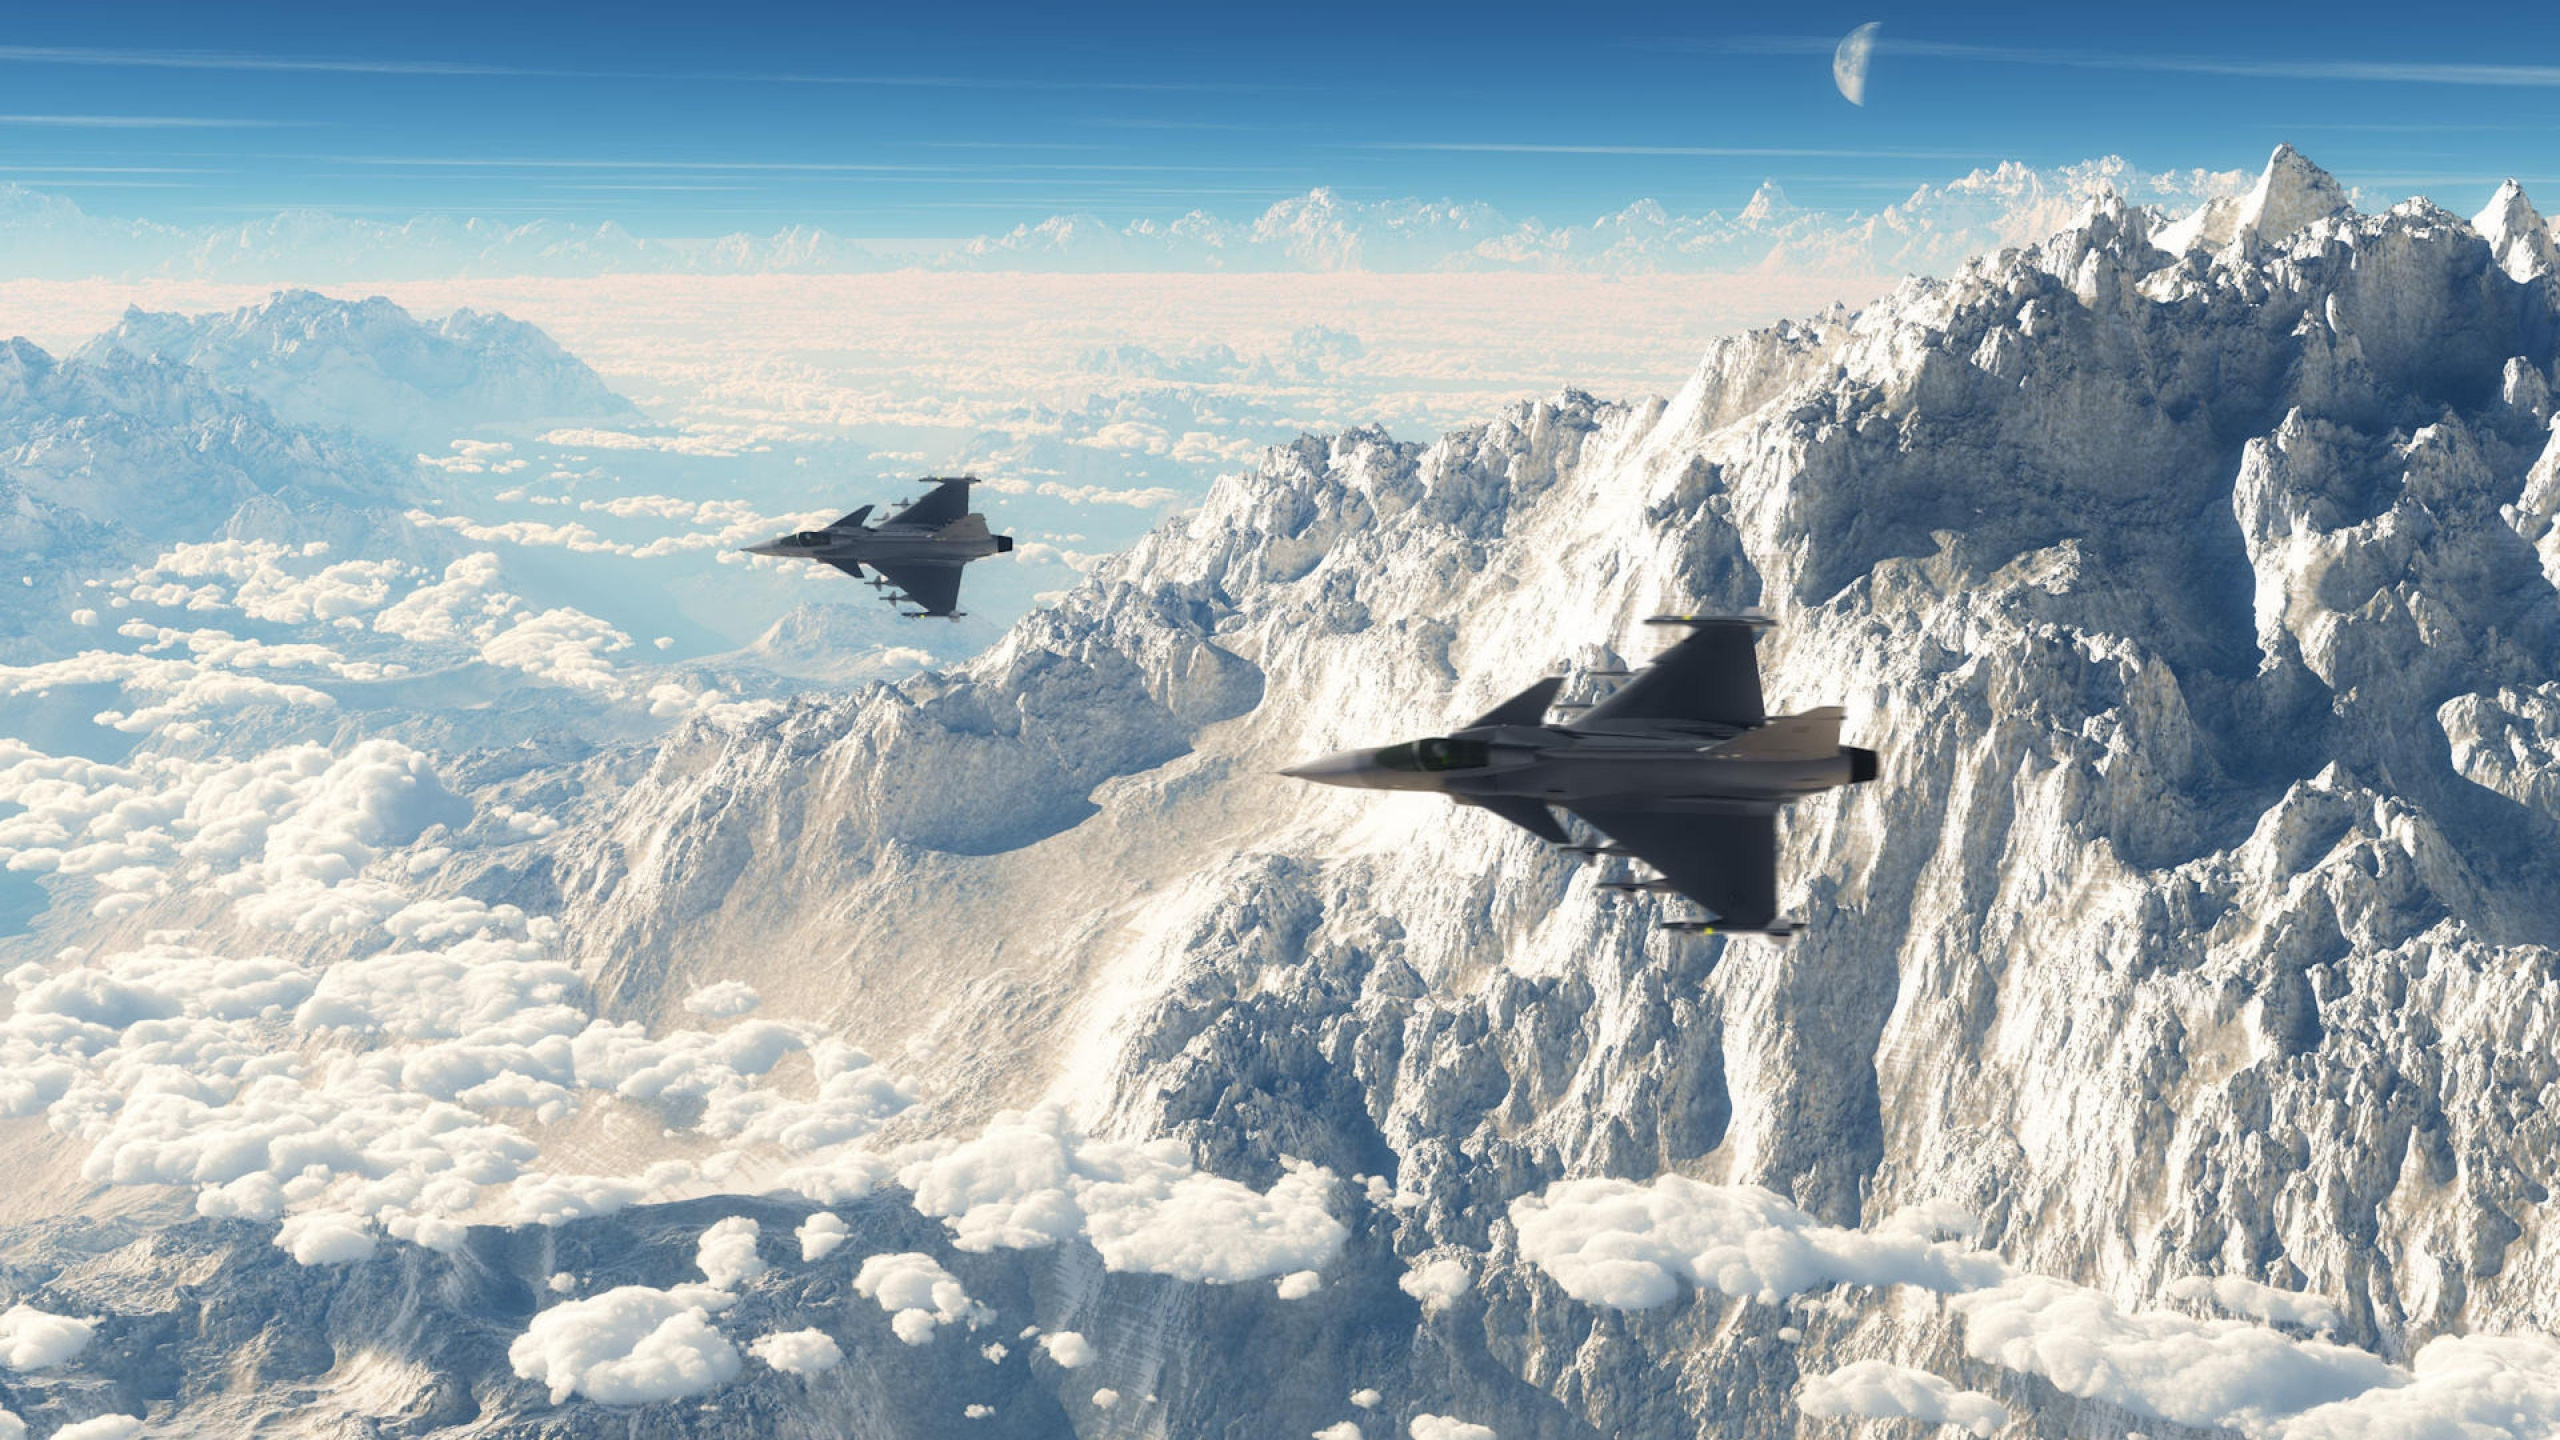 Avión de Combate Negro Sobrevolando Montañas Cubiertas de Nieve Durante el Día. Wallpaper in 2560x1440 Resolution